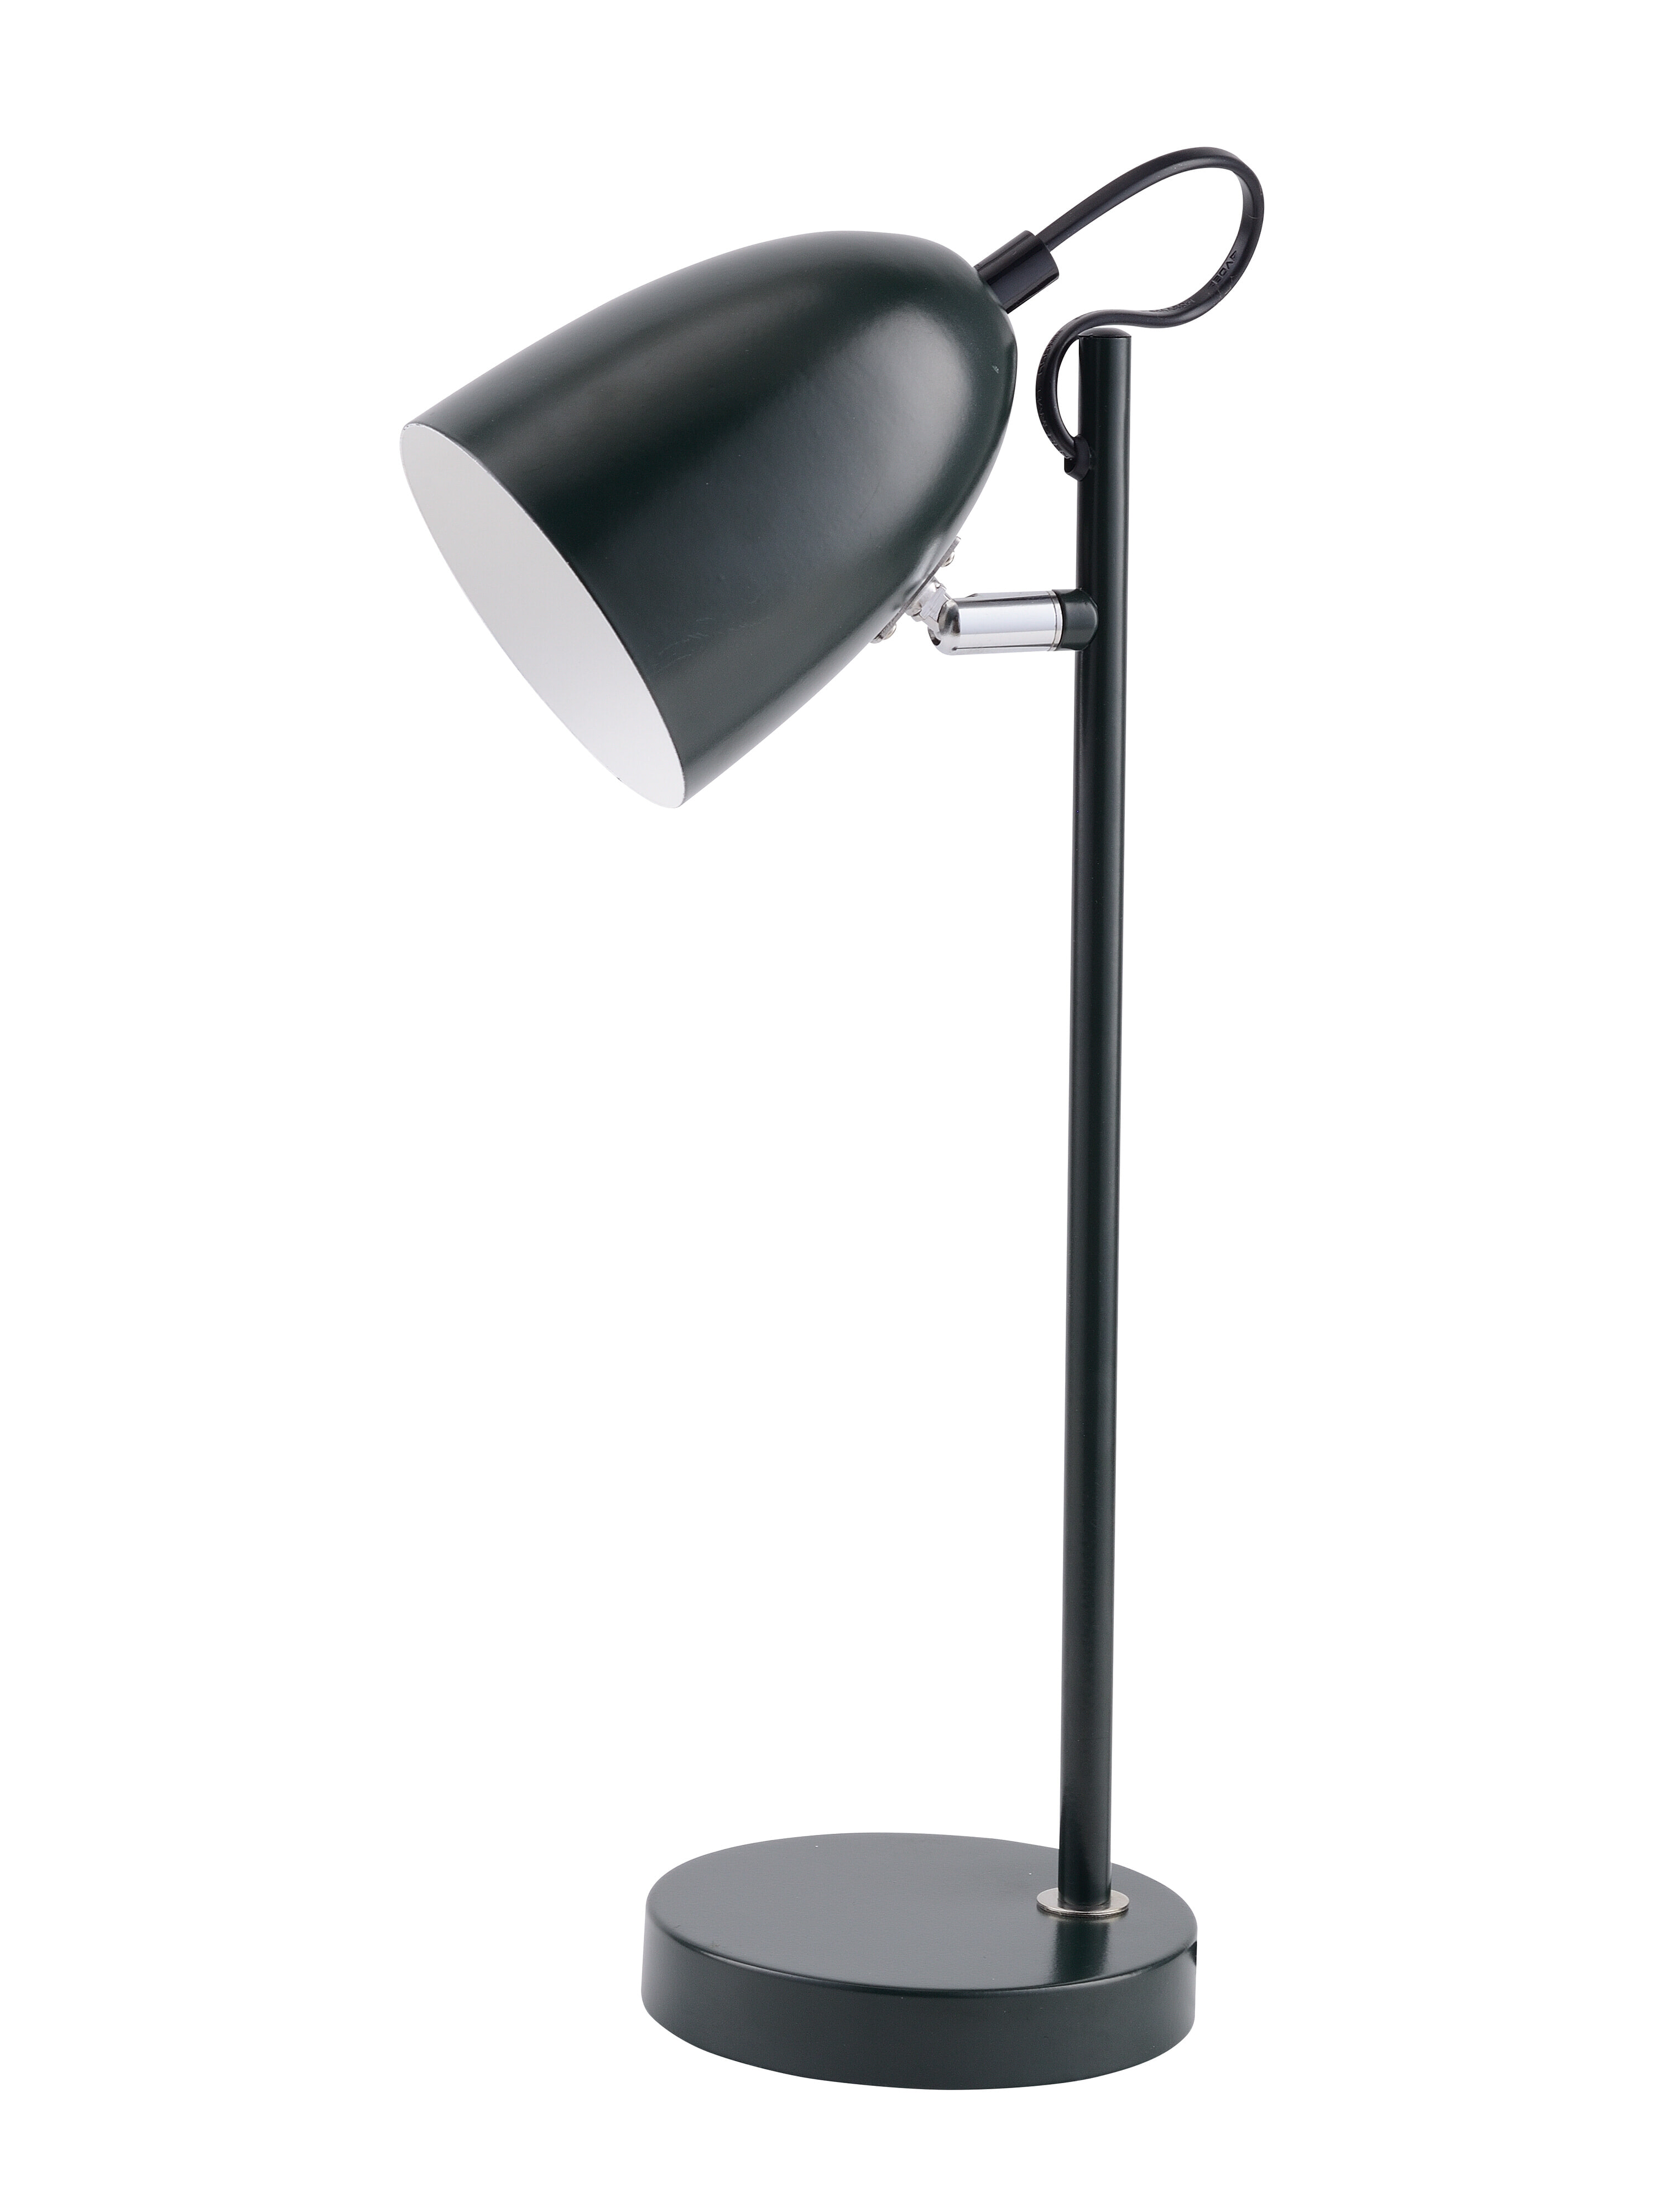 Halo Design Tafellamp 'Yep!' 37cm, kleur Zwart